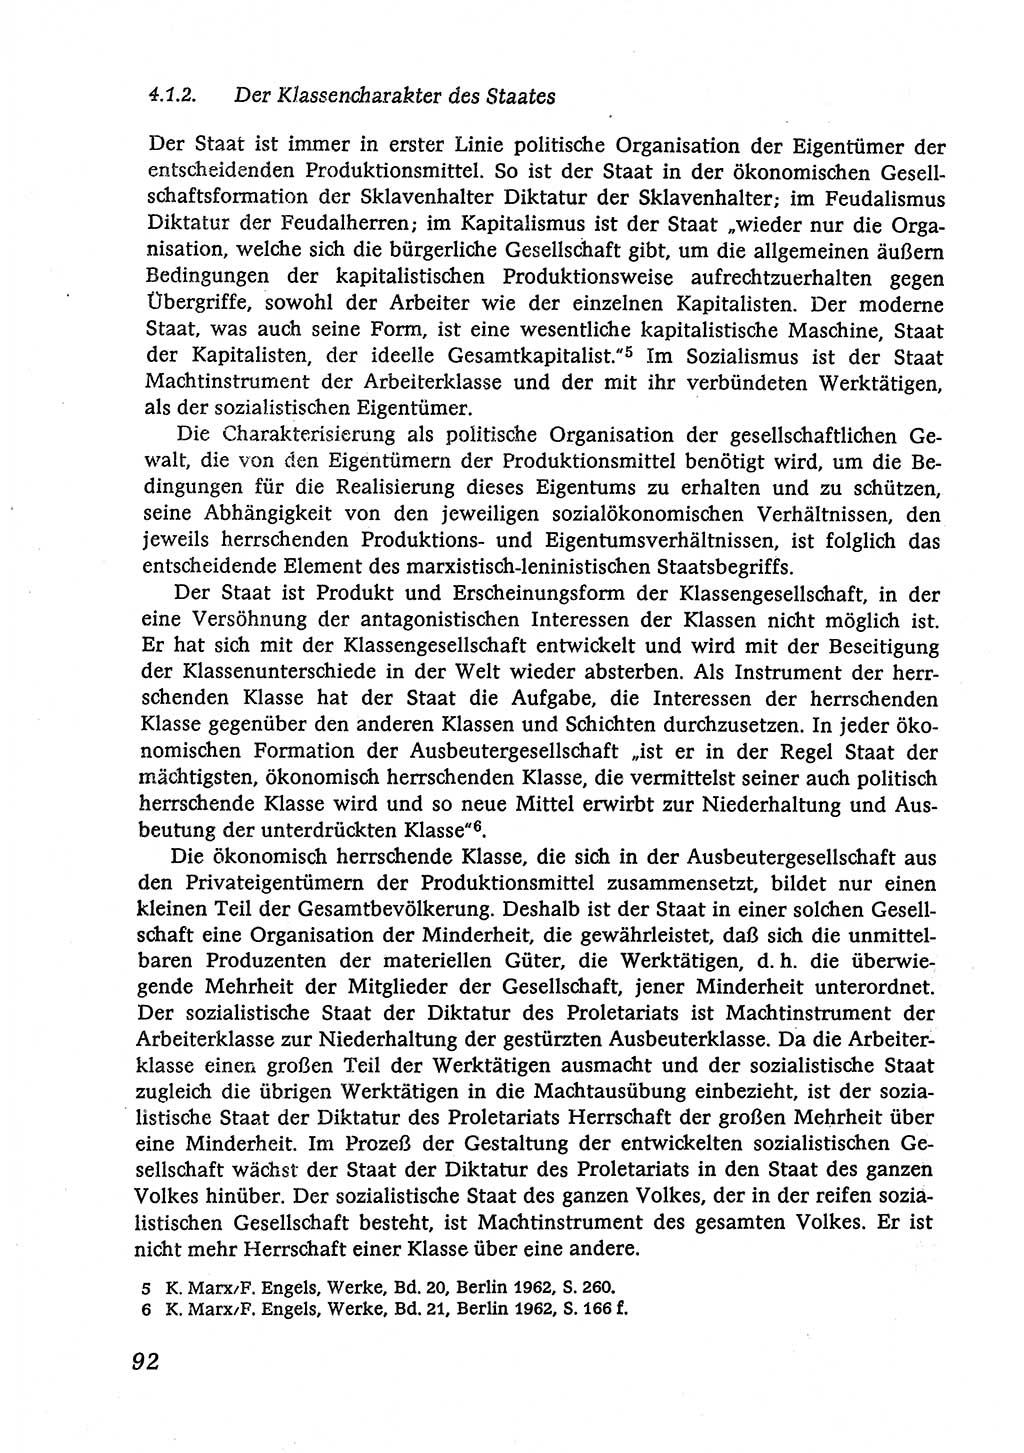 Marxistisch-leninistische (ML) Staats- und Rechtstheorie [Deutsche Demokratische Republik (DDR)], Lehrbuch 1980, Seite 92 (ML St.-R.-Th. DDR Lb. 1980, S. 92)